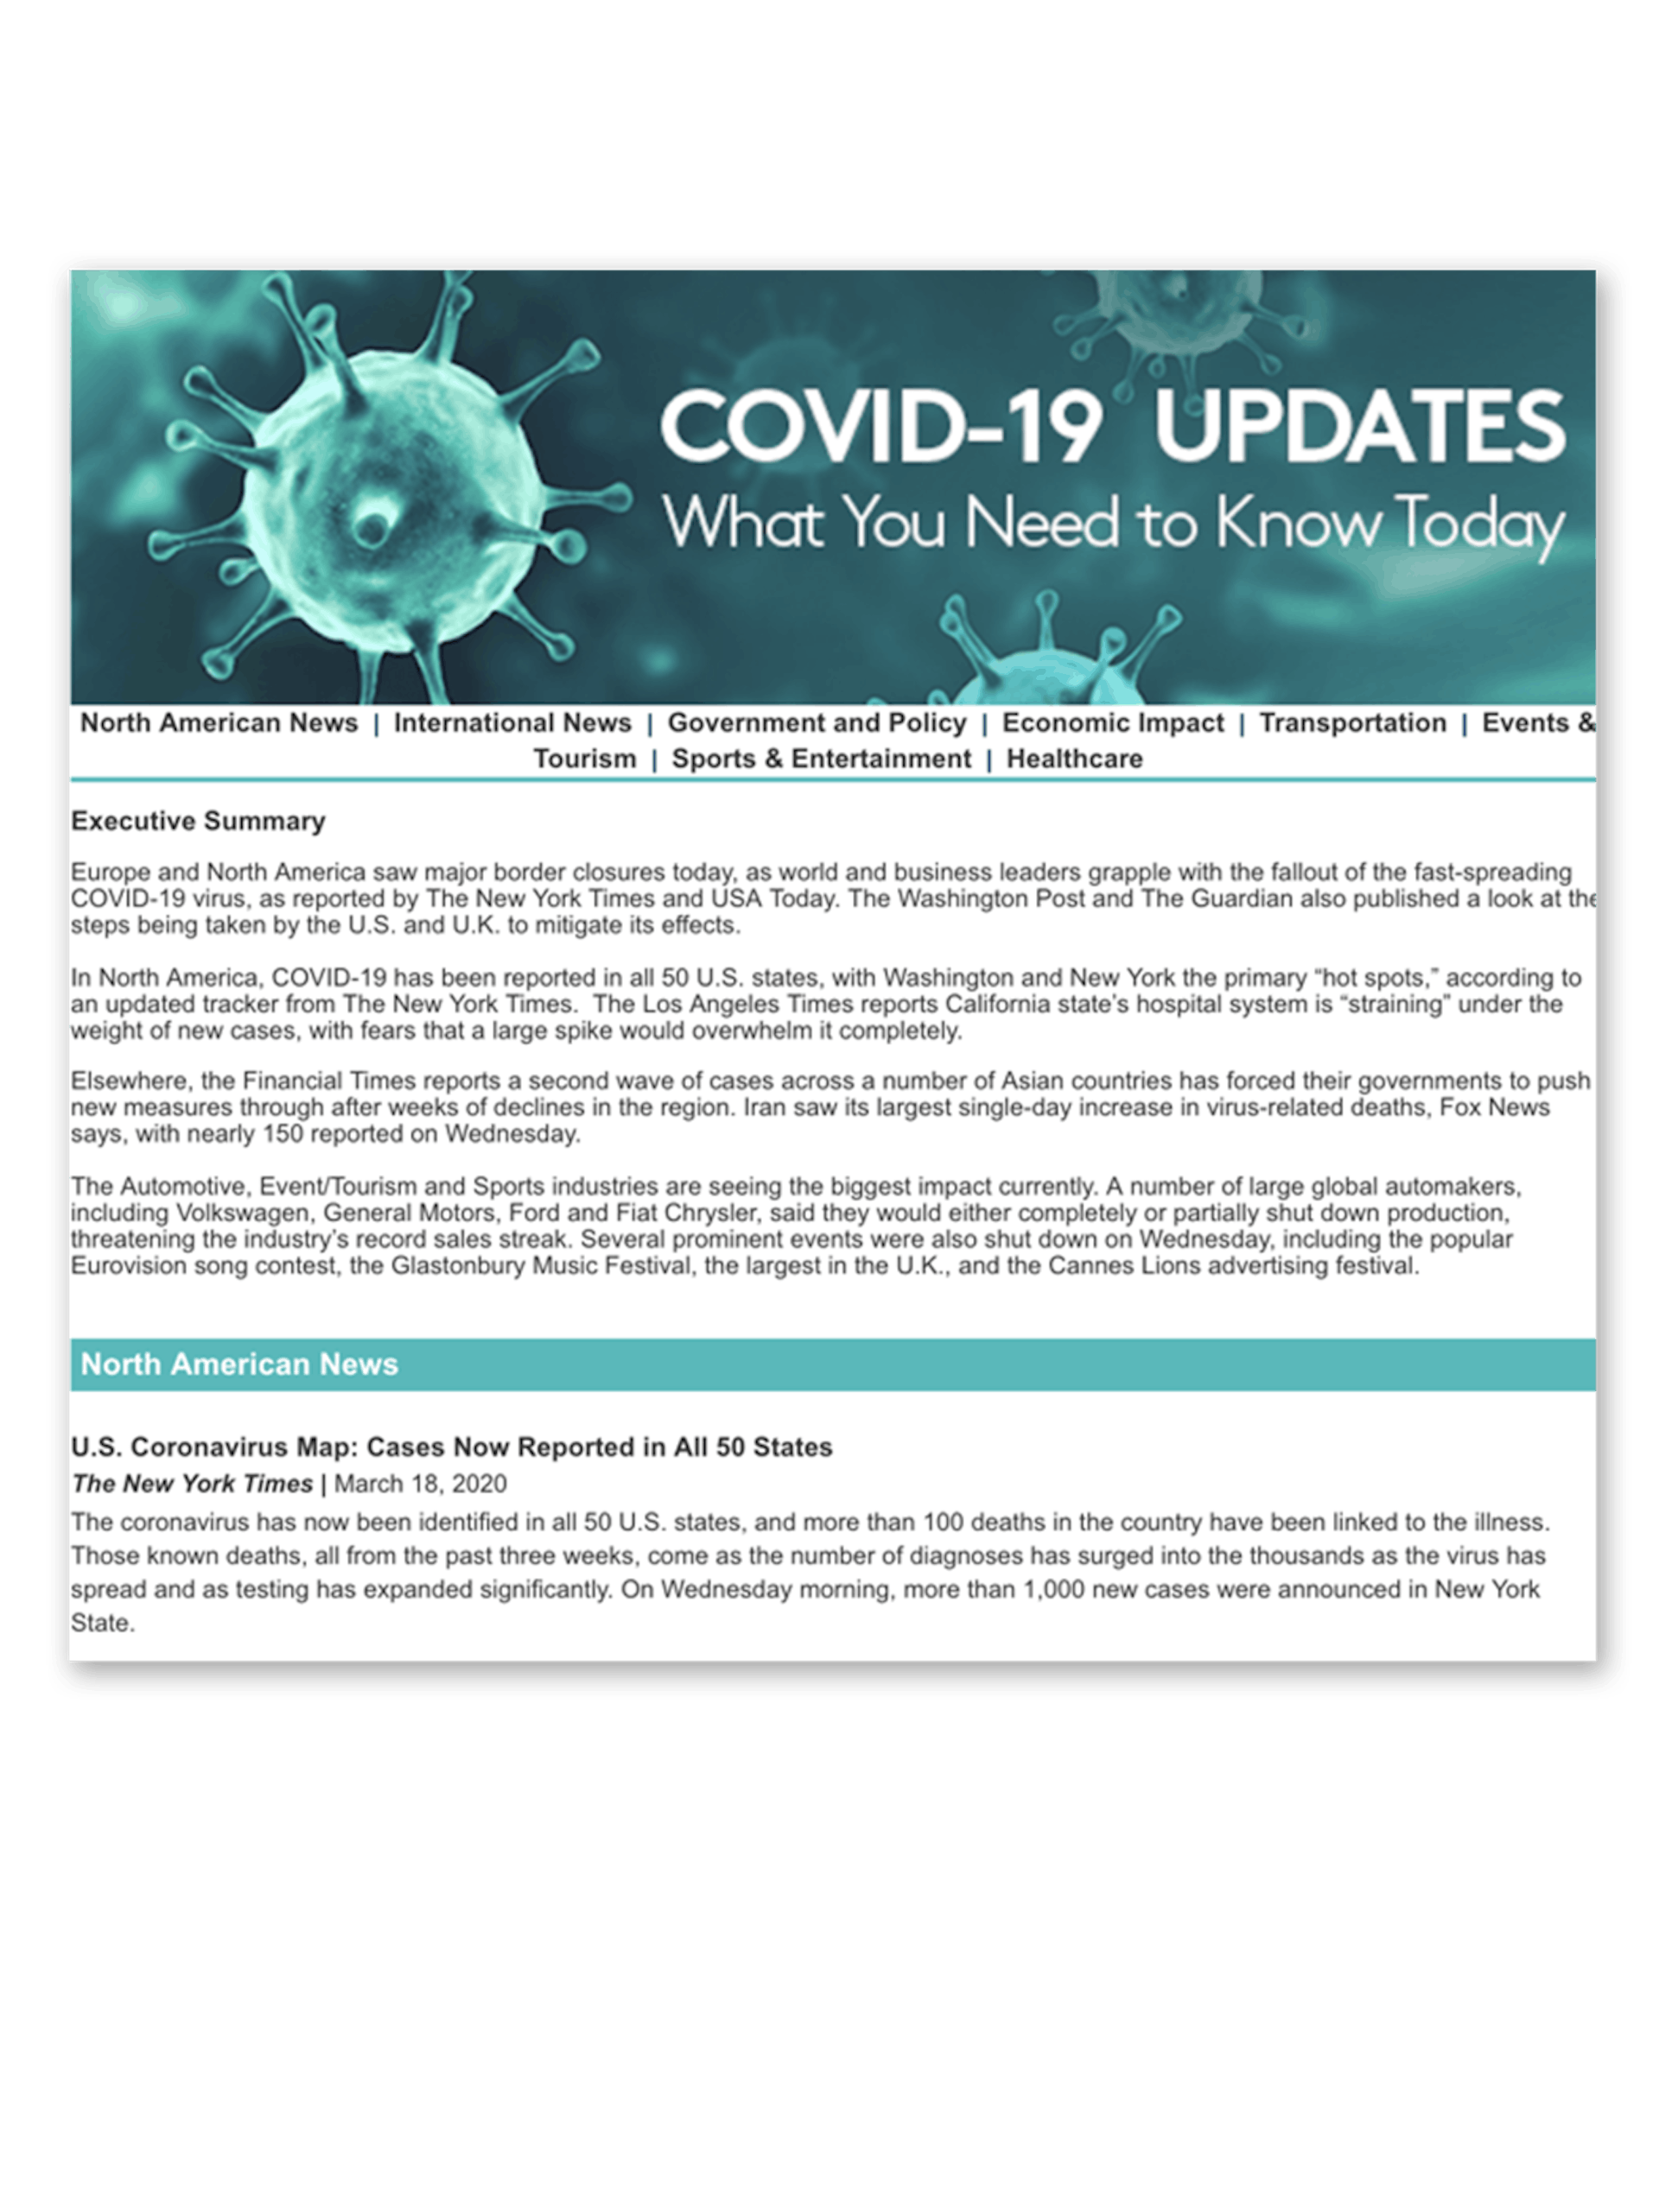 COVID-19 päivityksiä Meltwaterin sivuilta